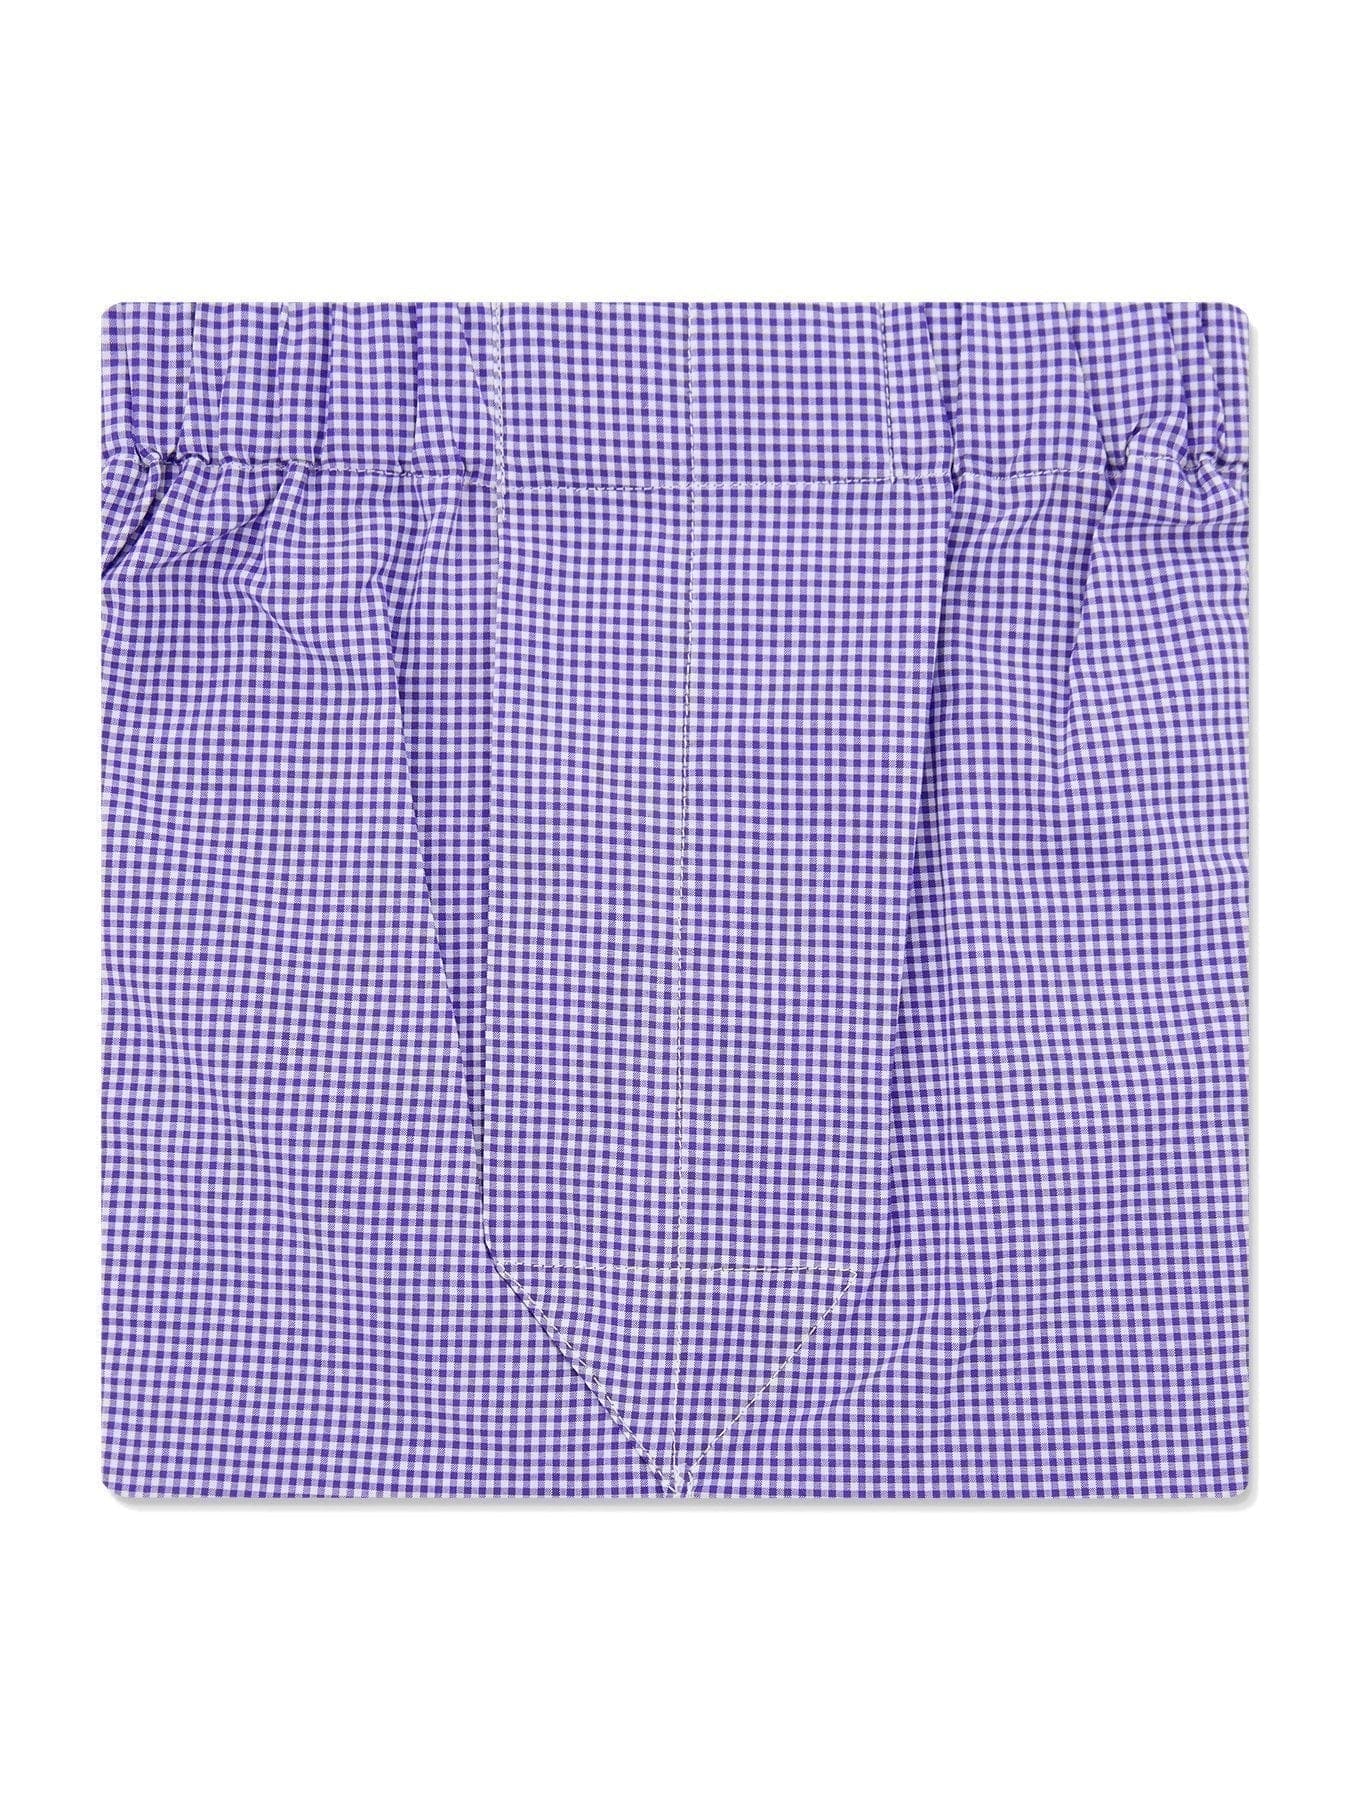 Purple & White Fine Check Poplin Cotton Classic Boxer Shorts